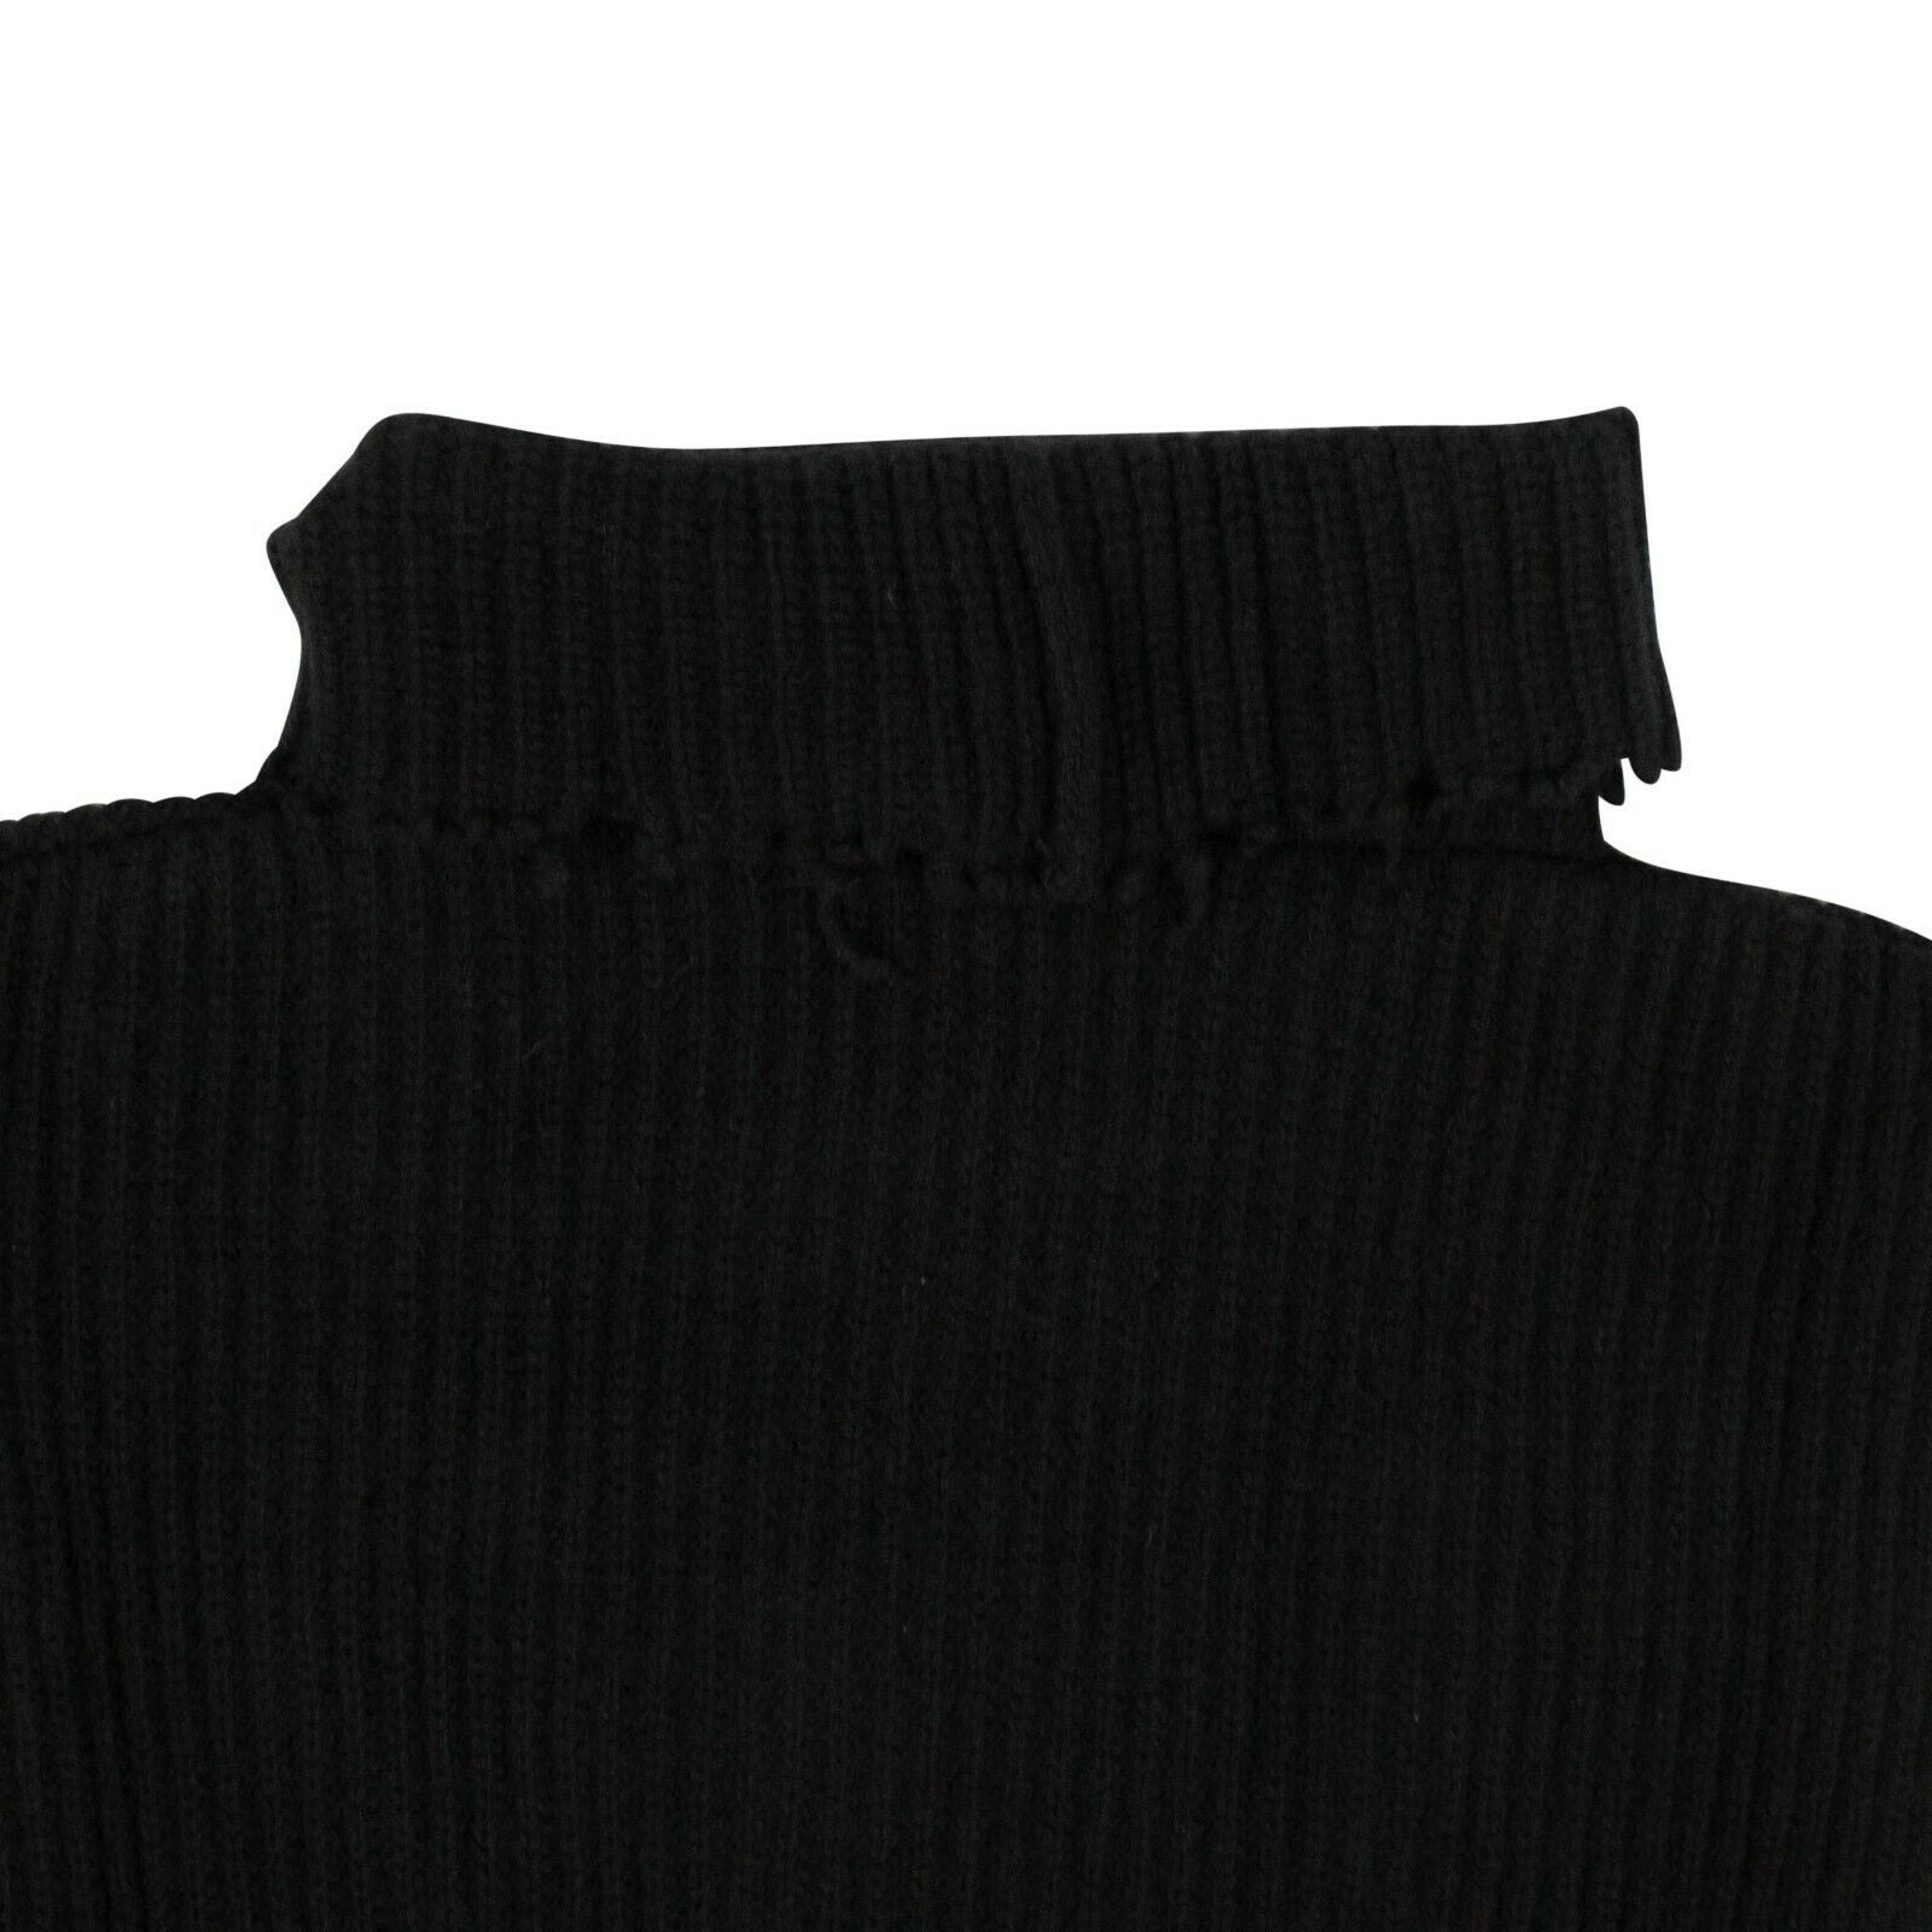 Alternate View 3 of Women's Black Wool Roll Neck Asymmetric Sweater